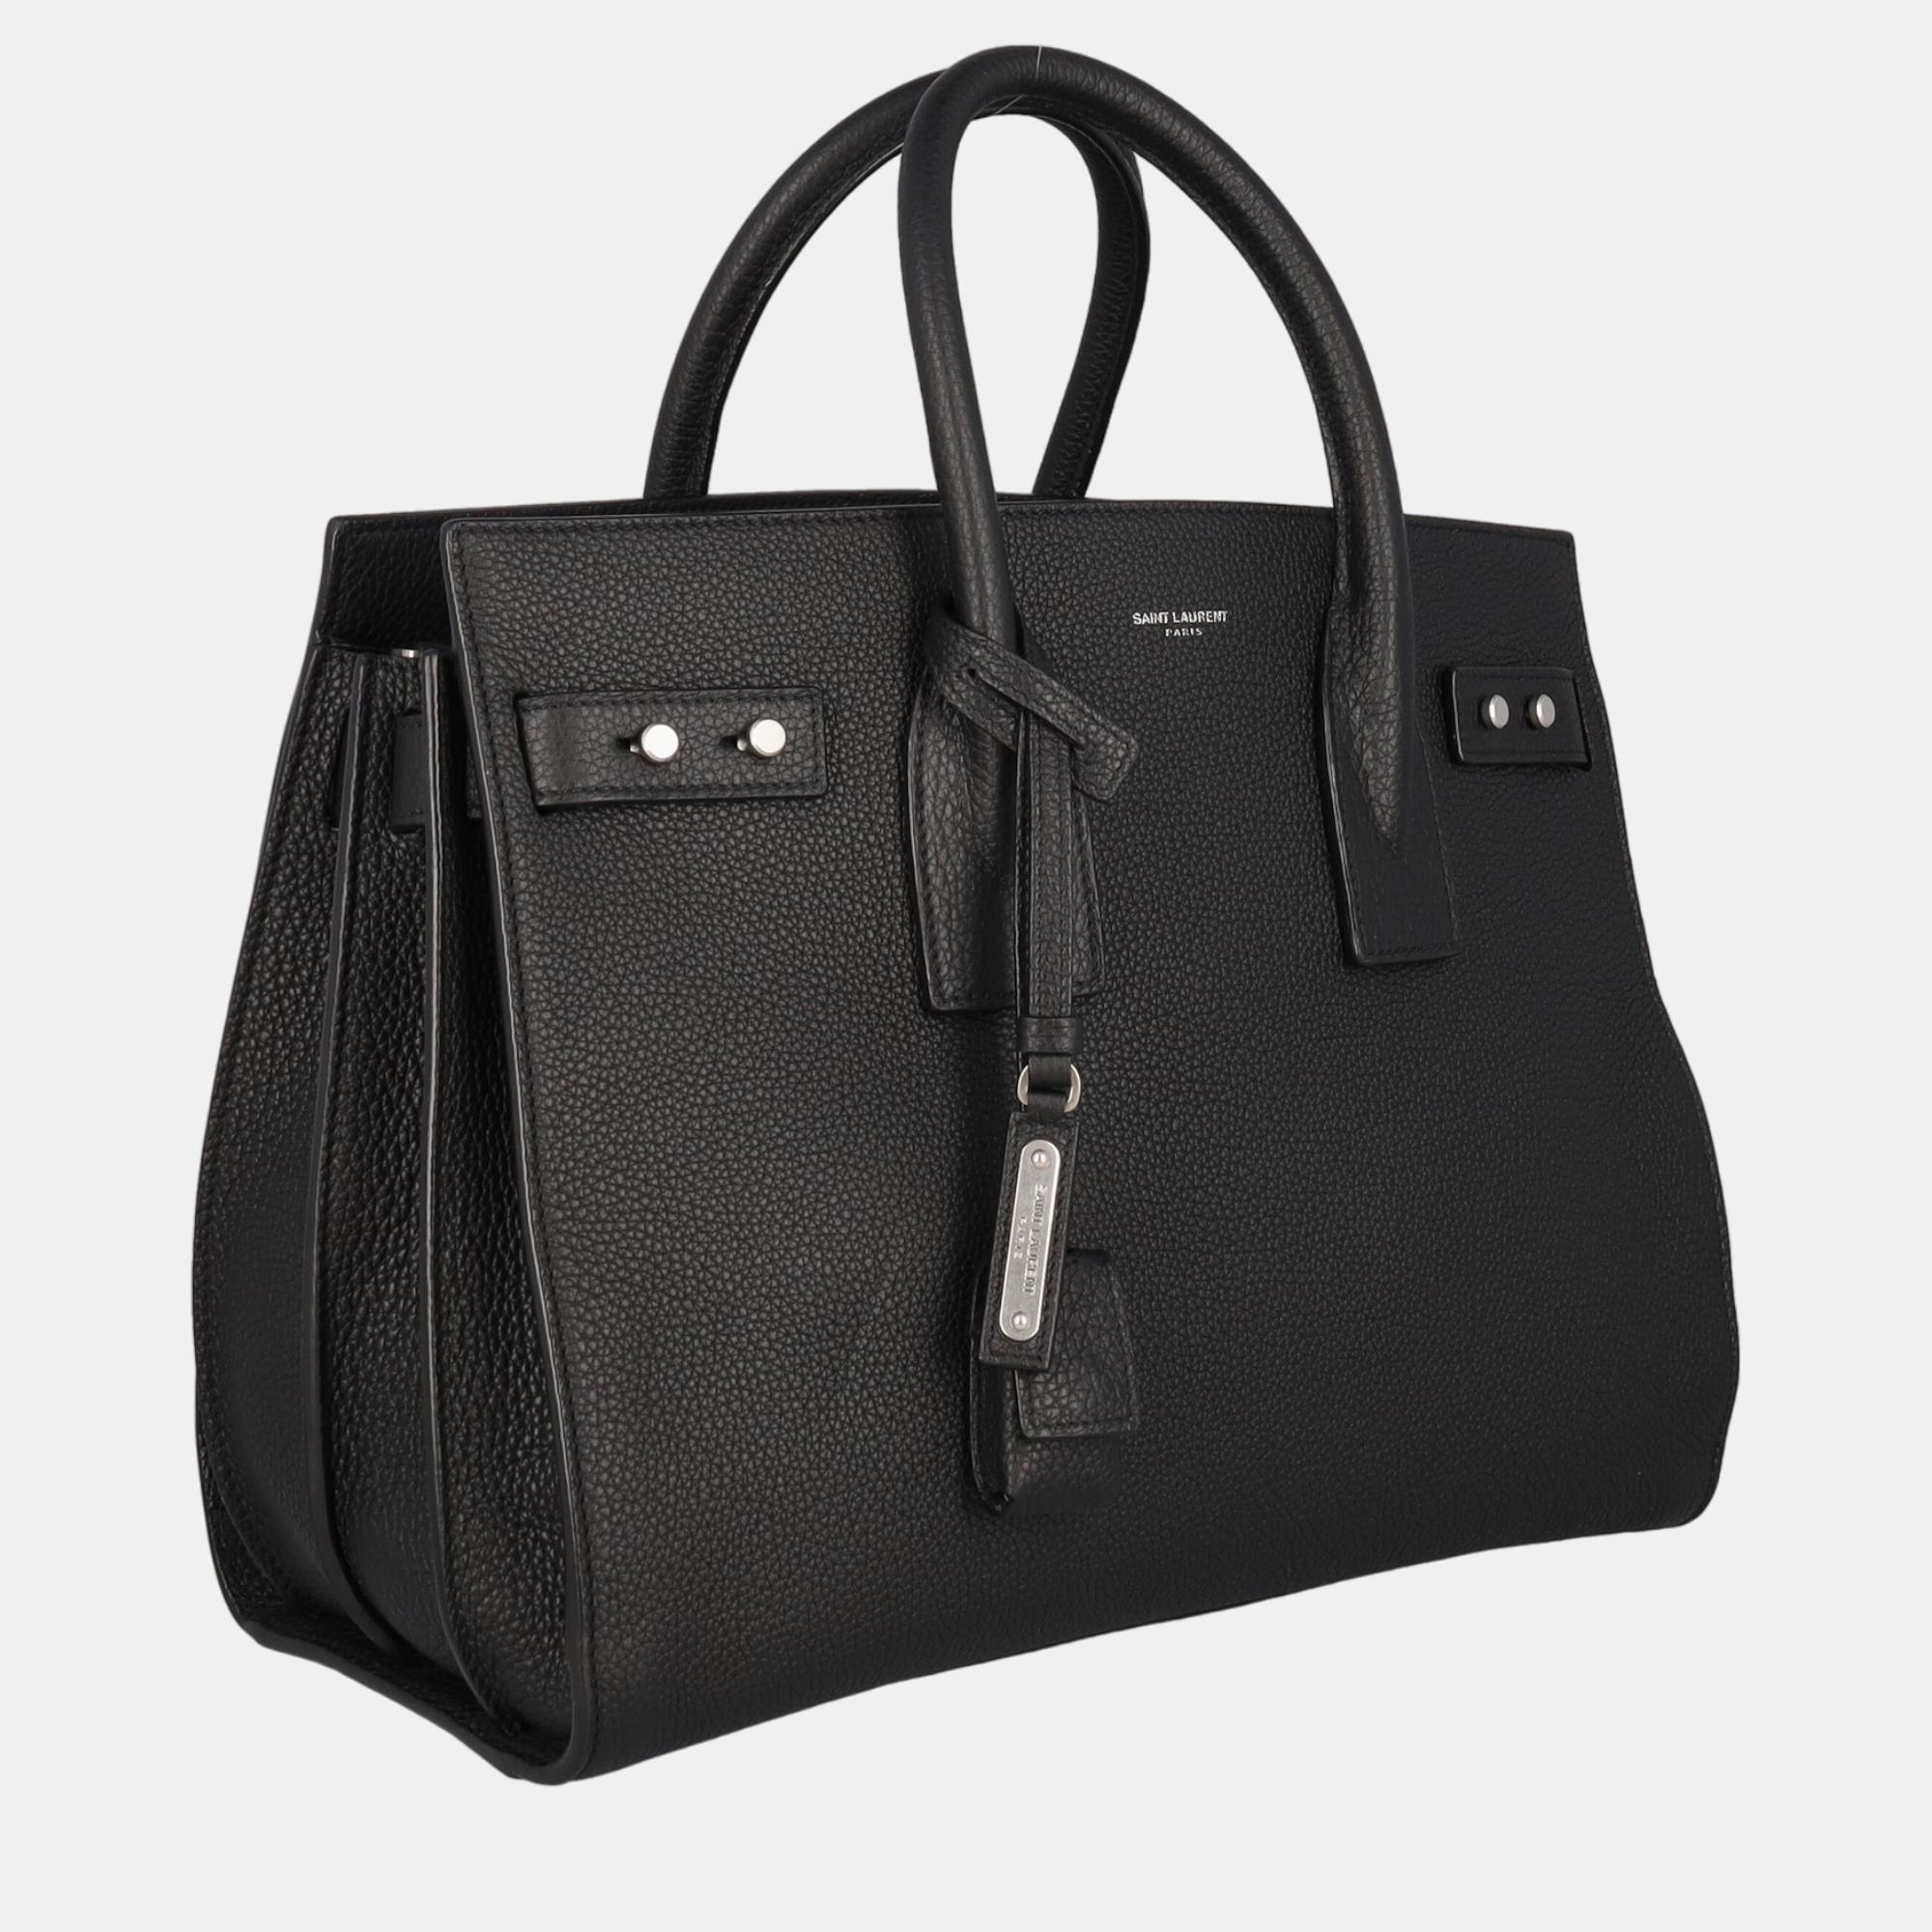 

Saint Laurent Women's Leather Tote Bag - Black